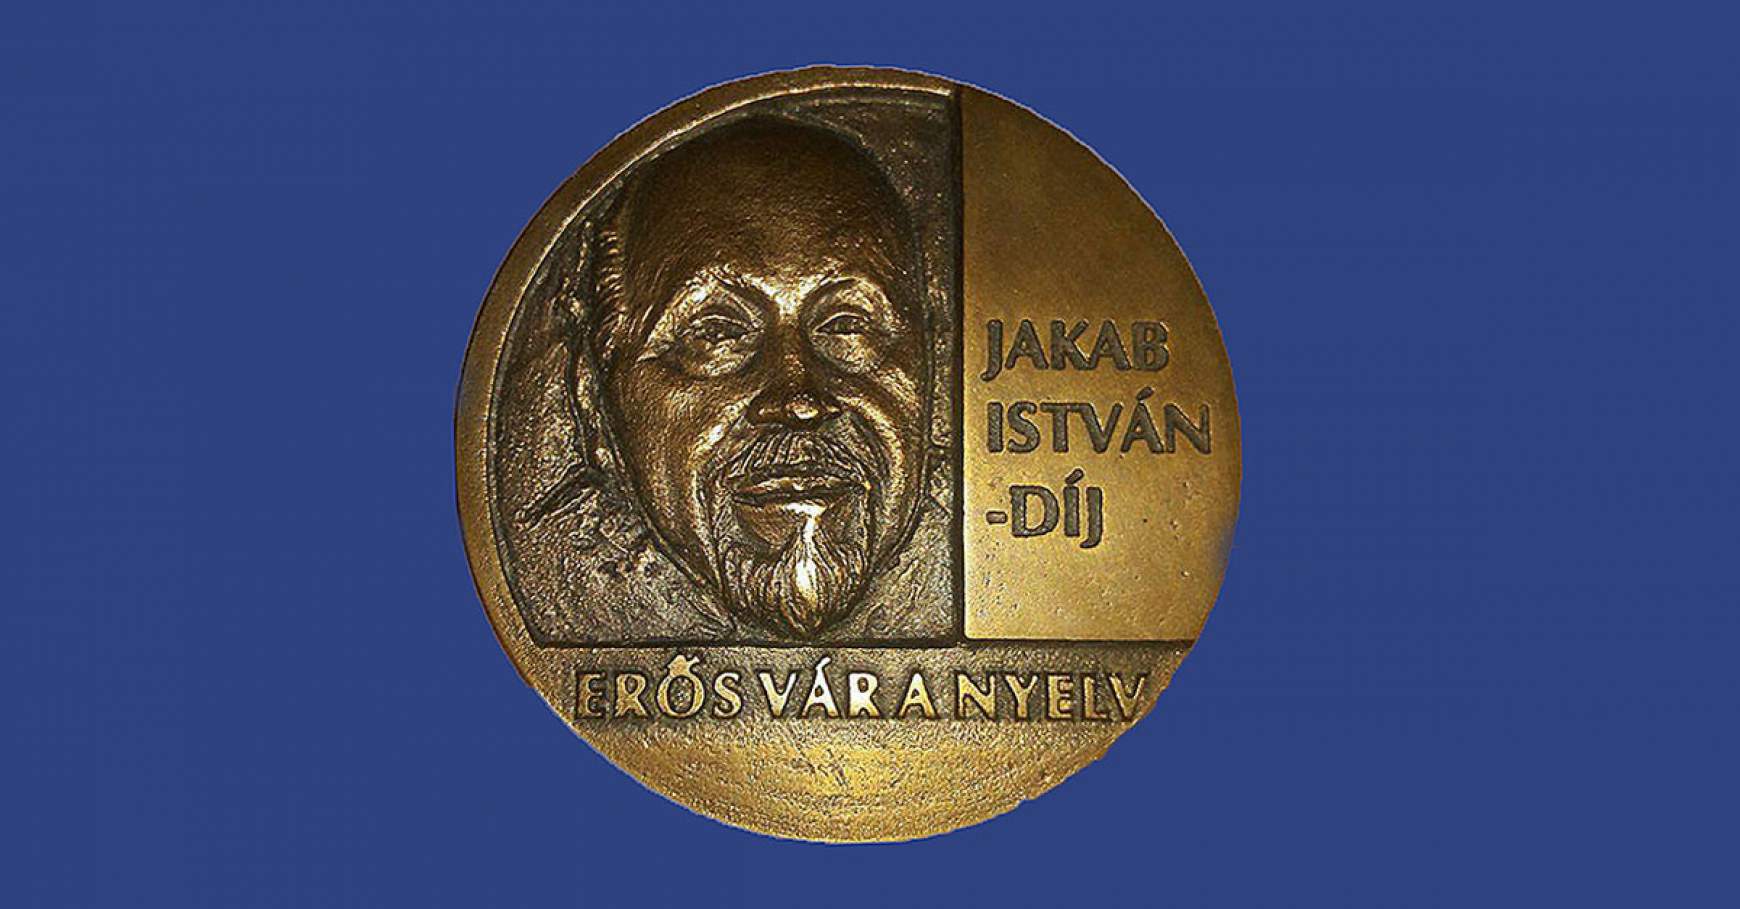 Jakab István-díj